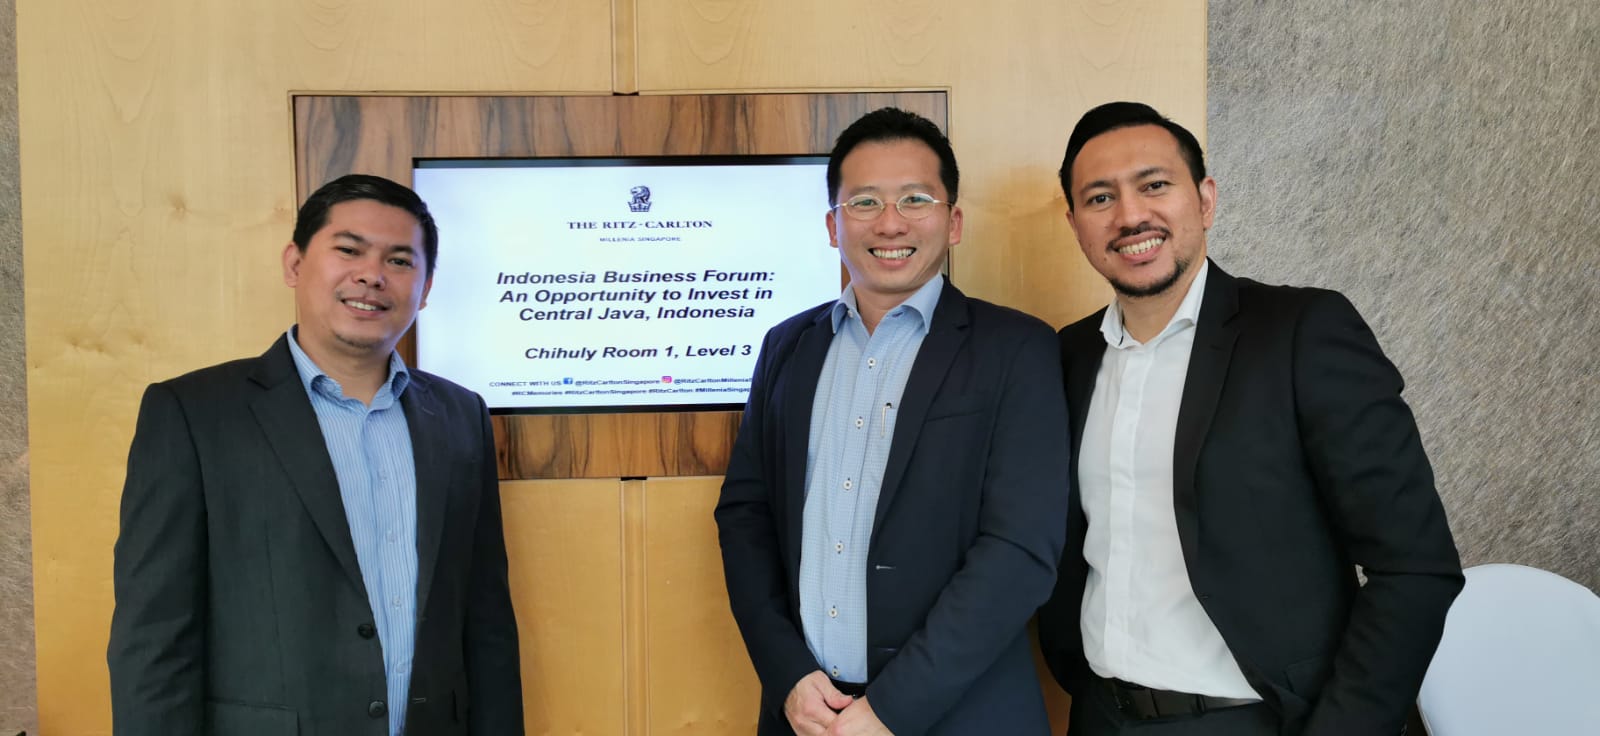 Indonesia Business Forum 13 Dec 2019 in Singapore